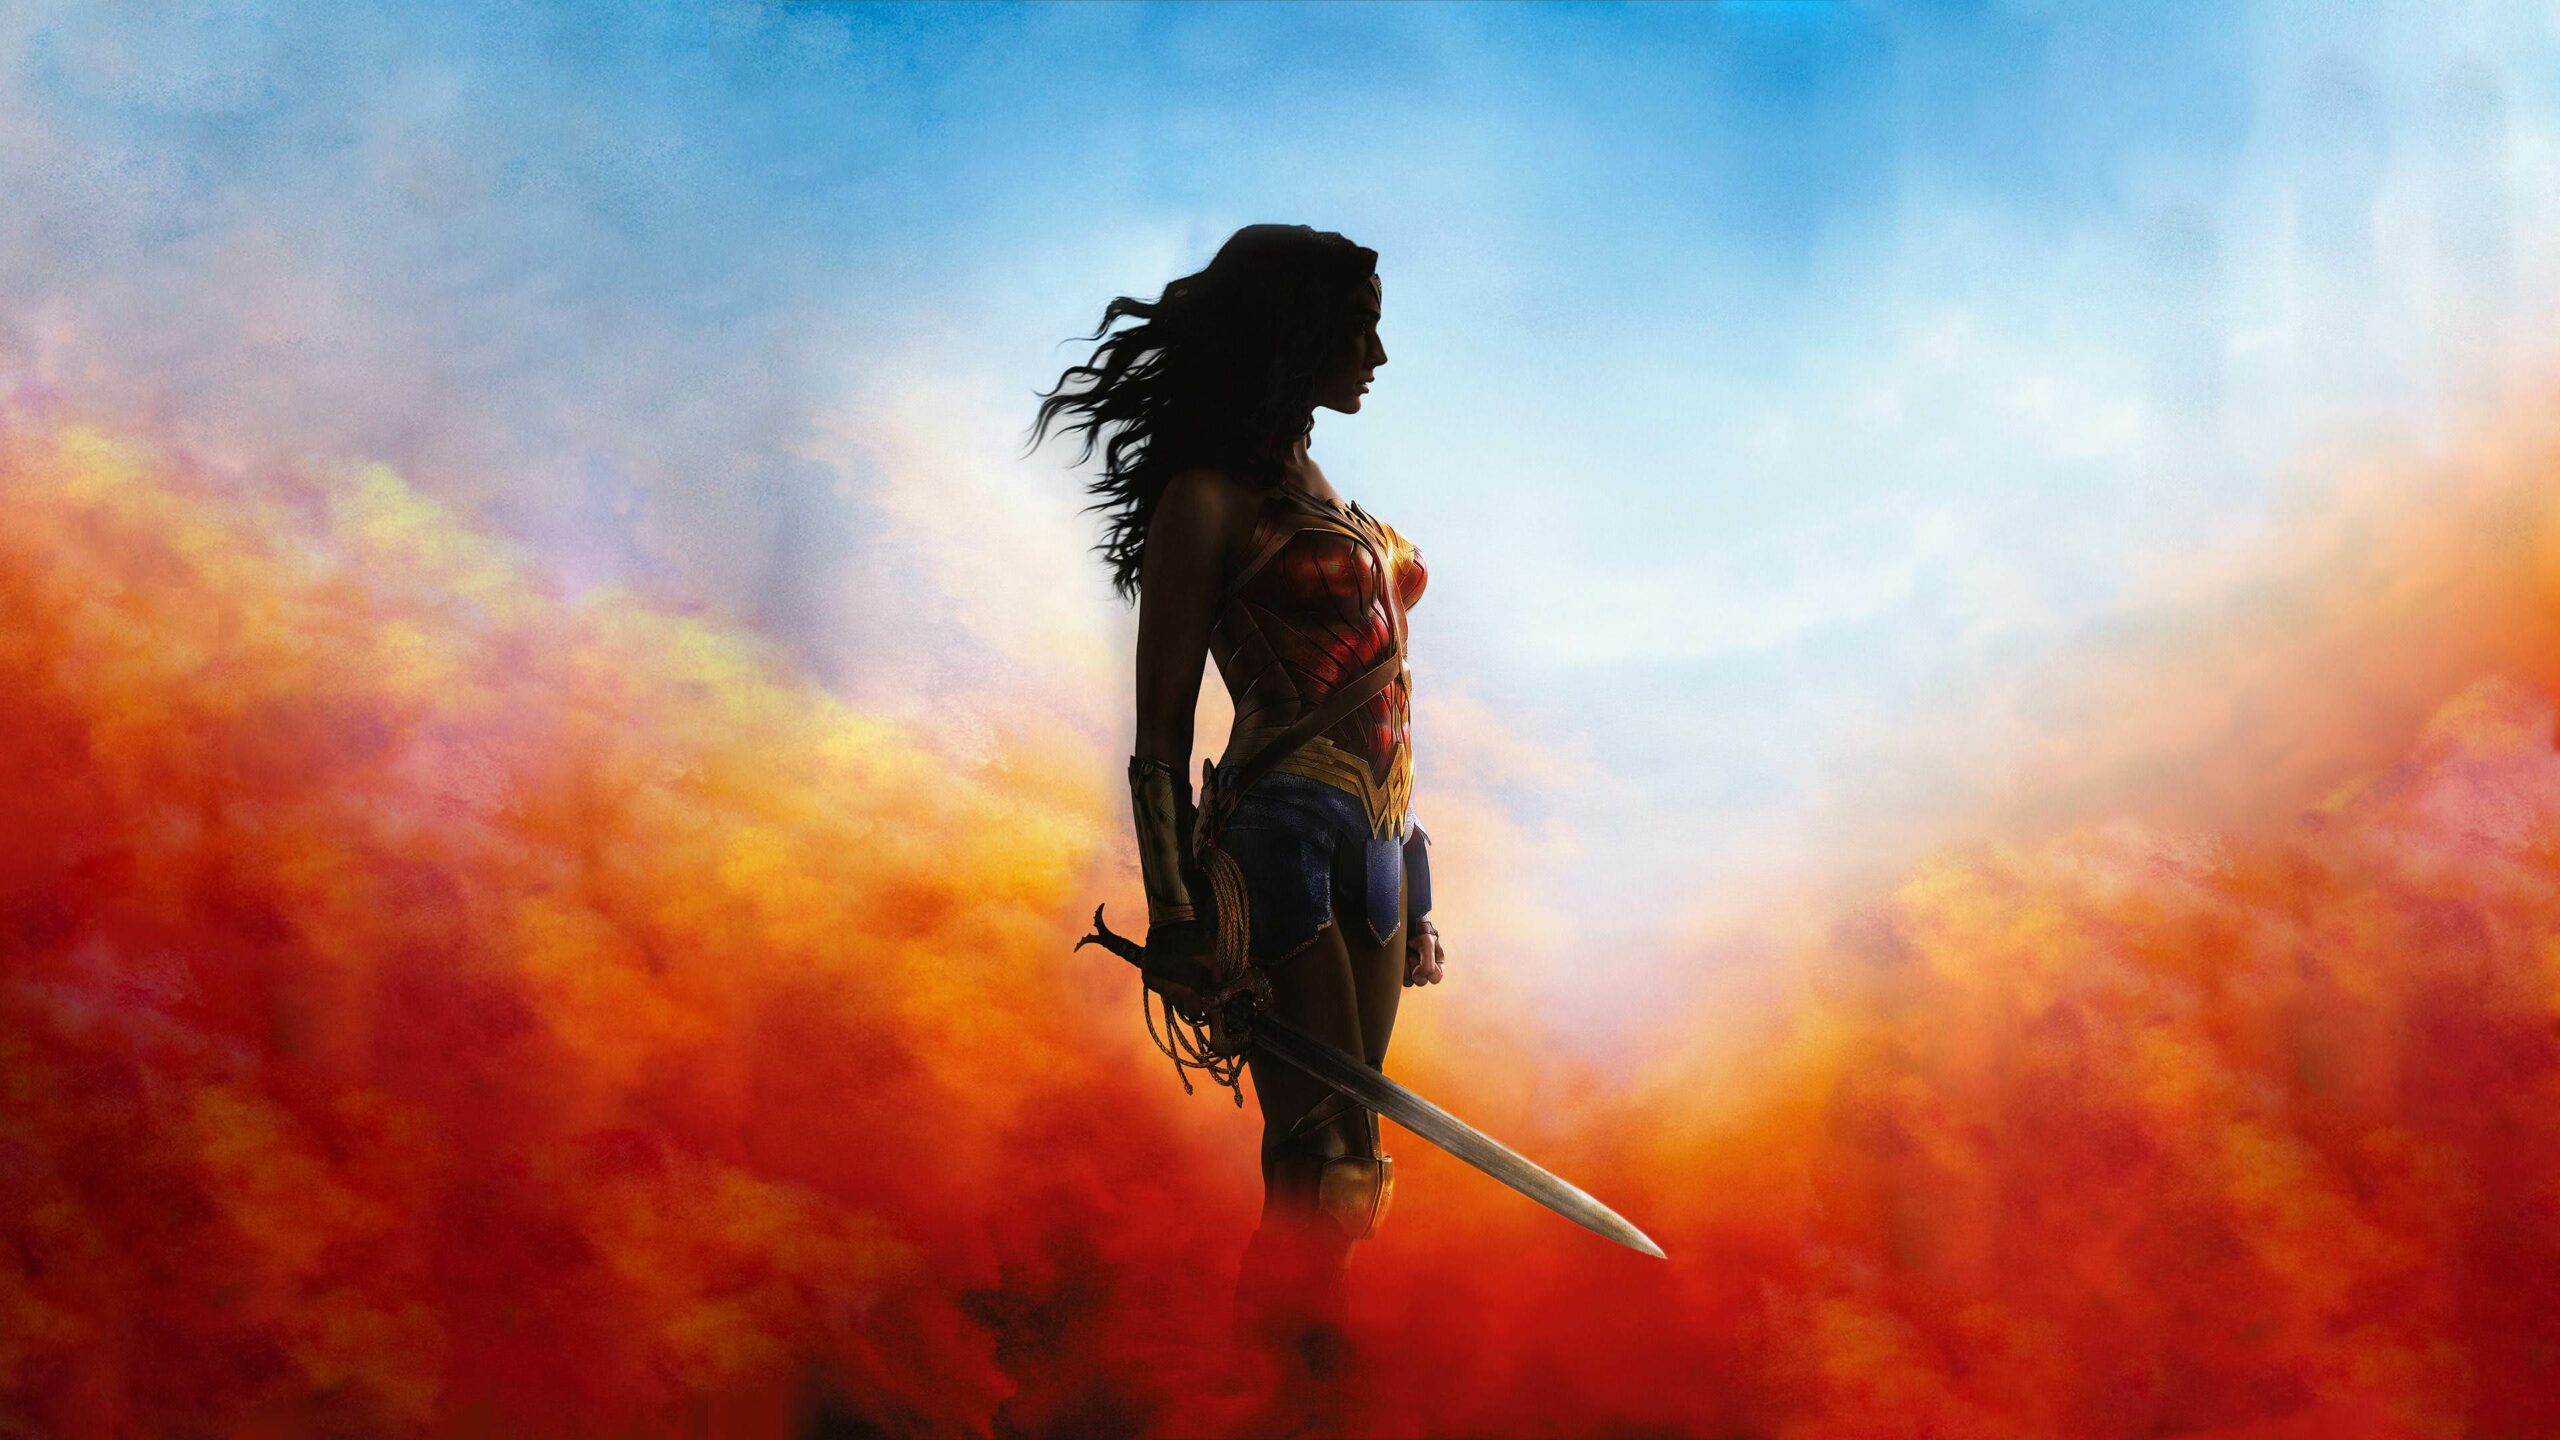 Warner Bros Wonder Woman